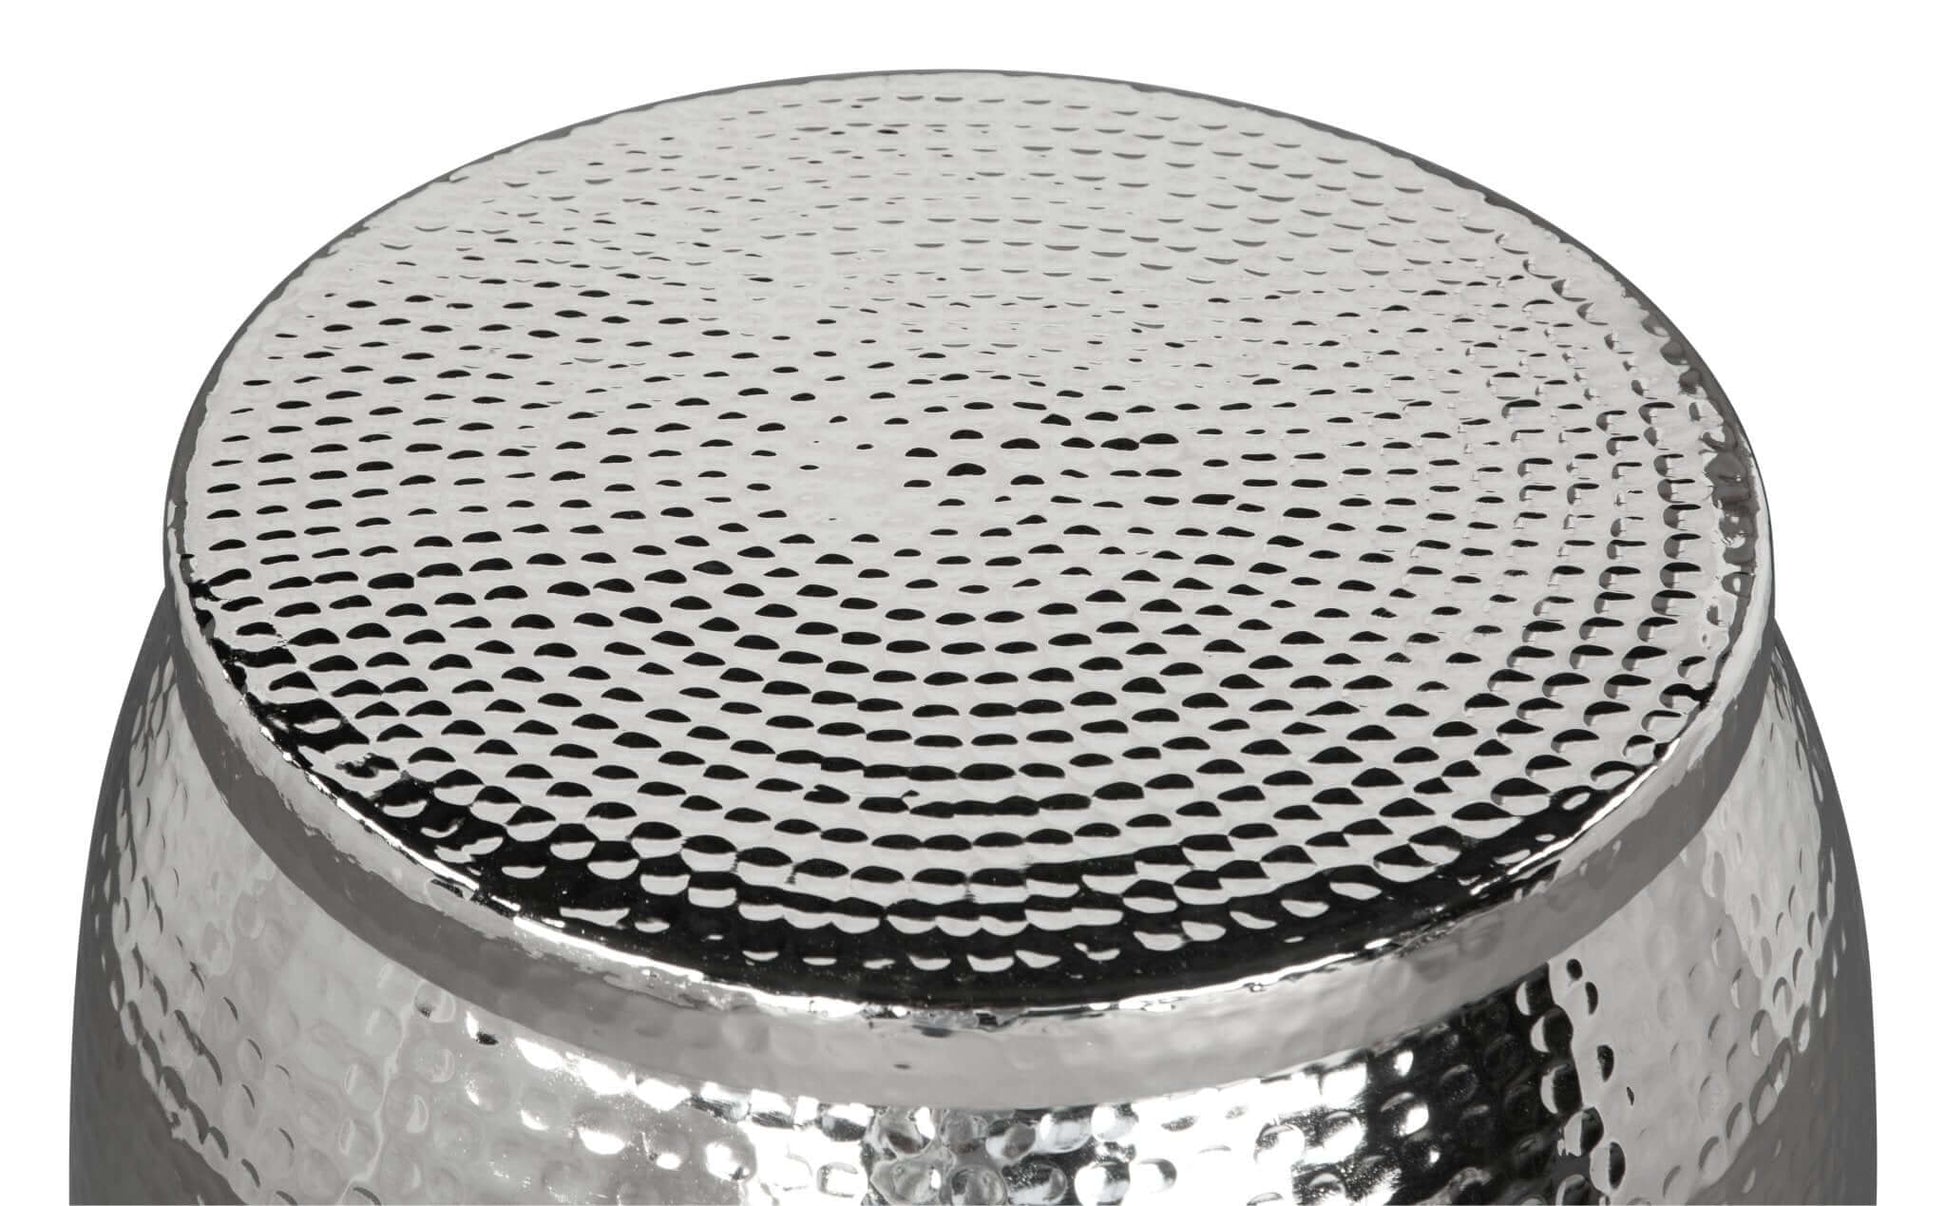 Solo Metallic Round Side Table Storage, Silver - Revel Sofa 